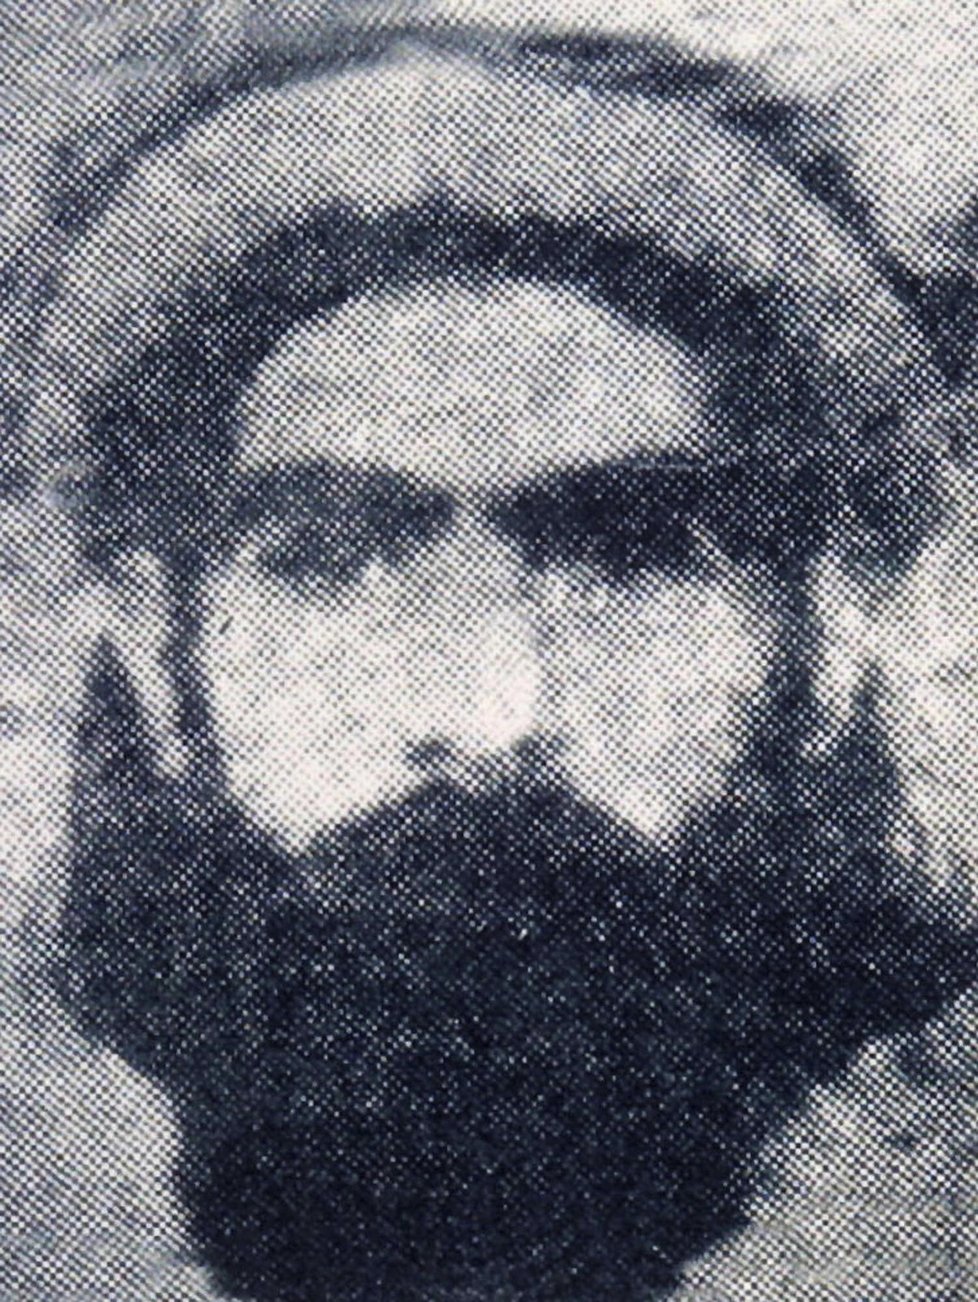 Předchozí tálibánský velitel Muhammed Umar